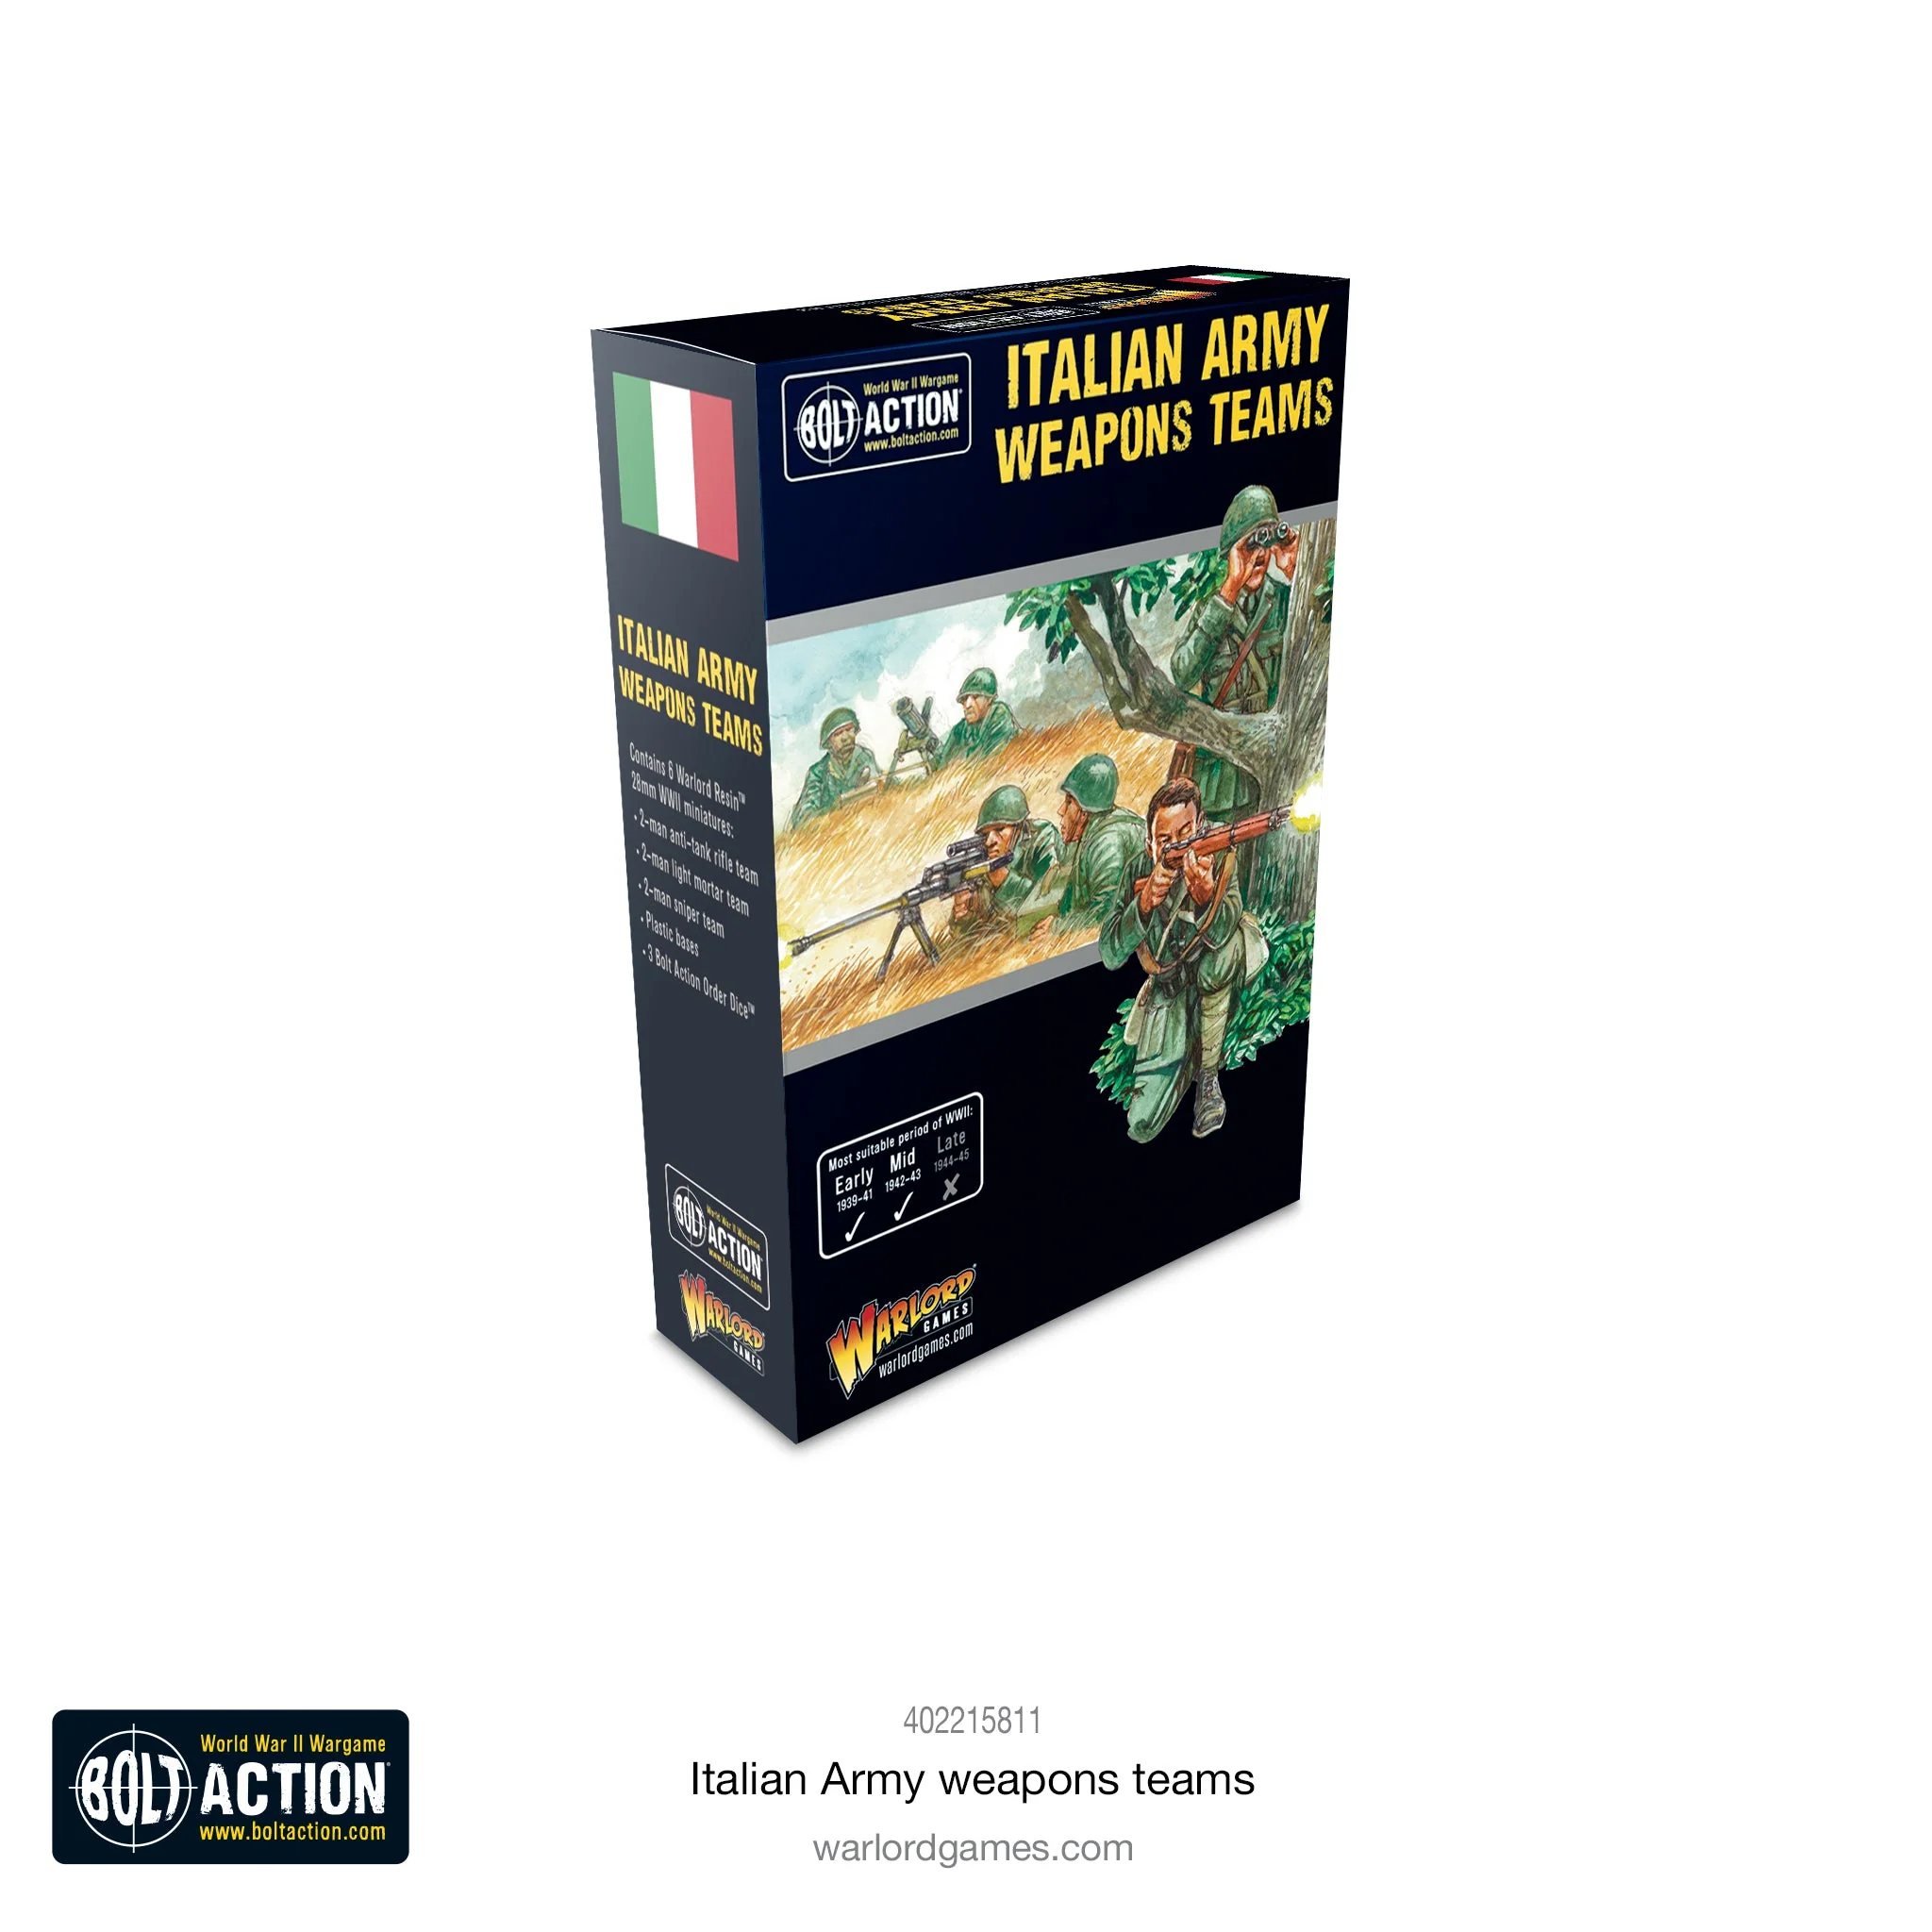 Italian Army weapons teams-1678981376.jpg